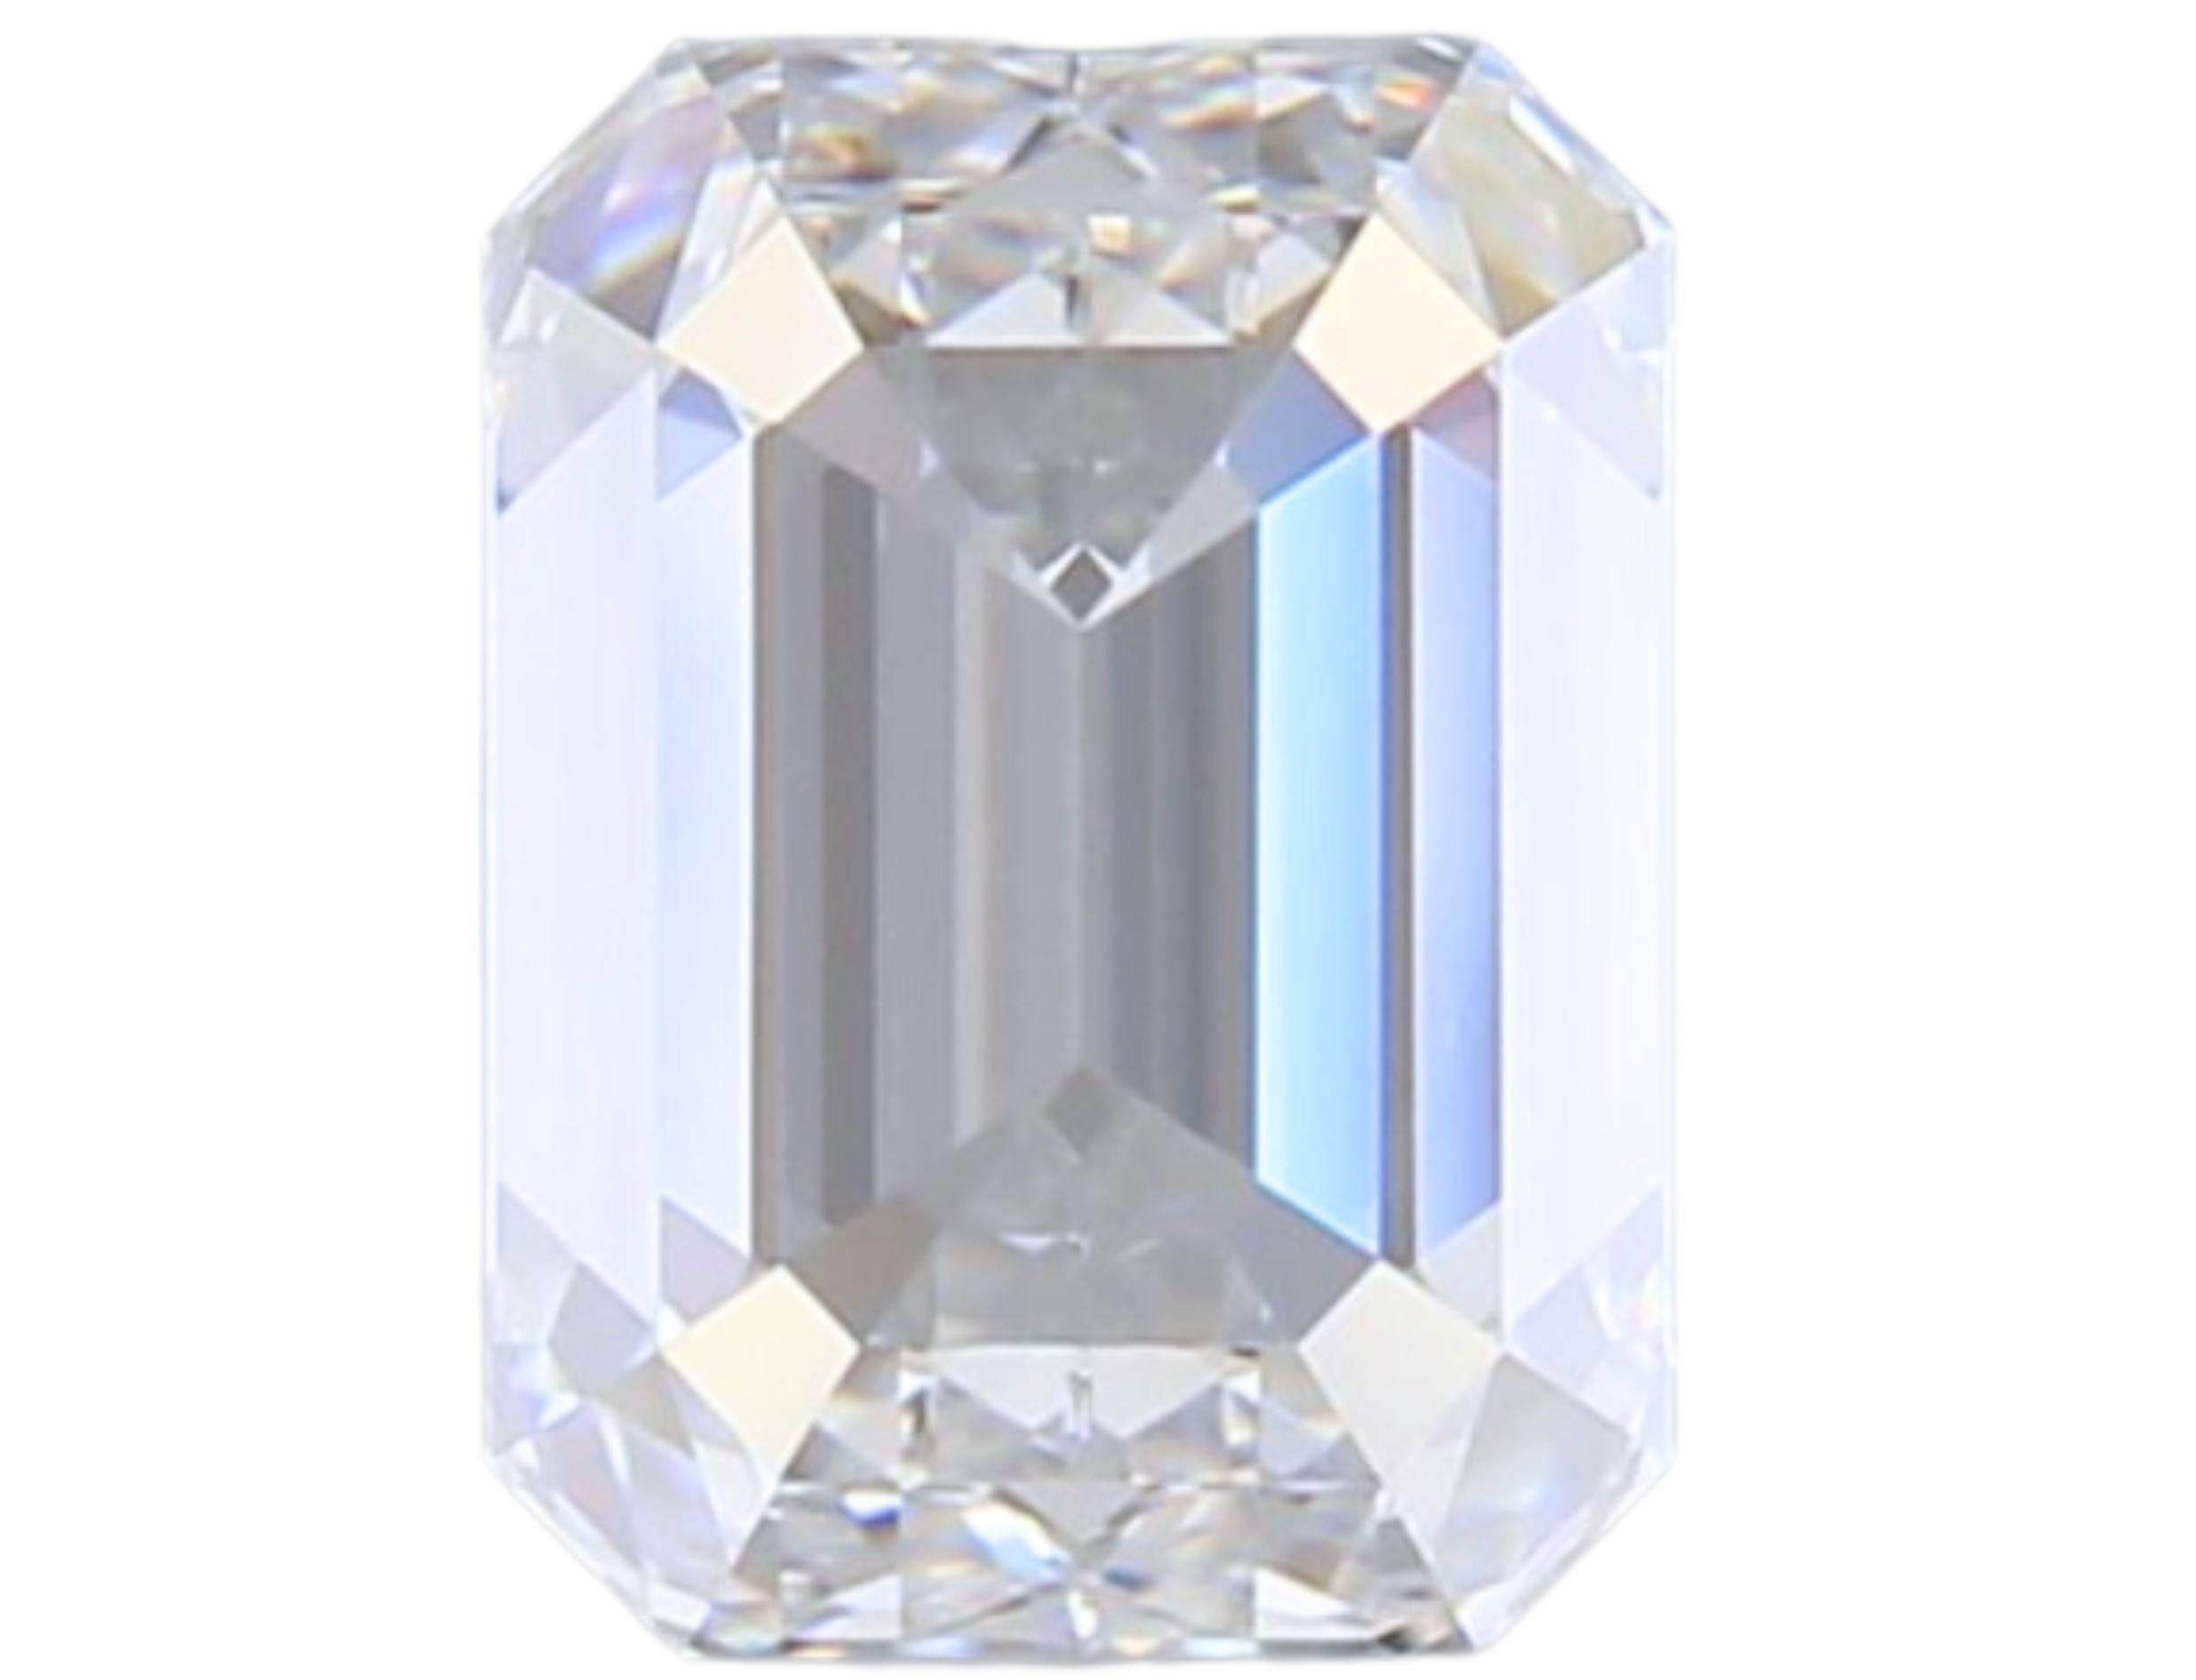 Luxurious 1 carat Emerald Cut Brilliant Diamond 2